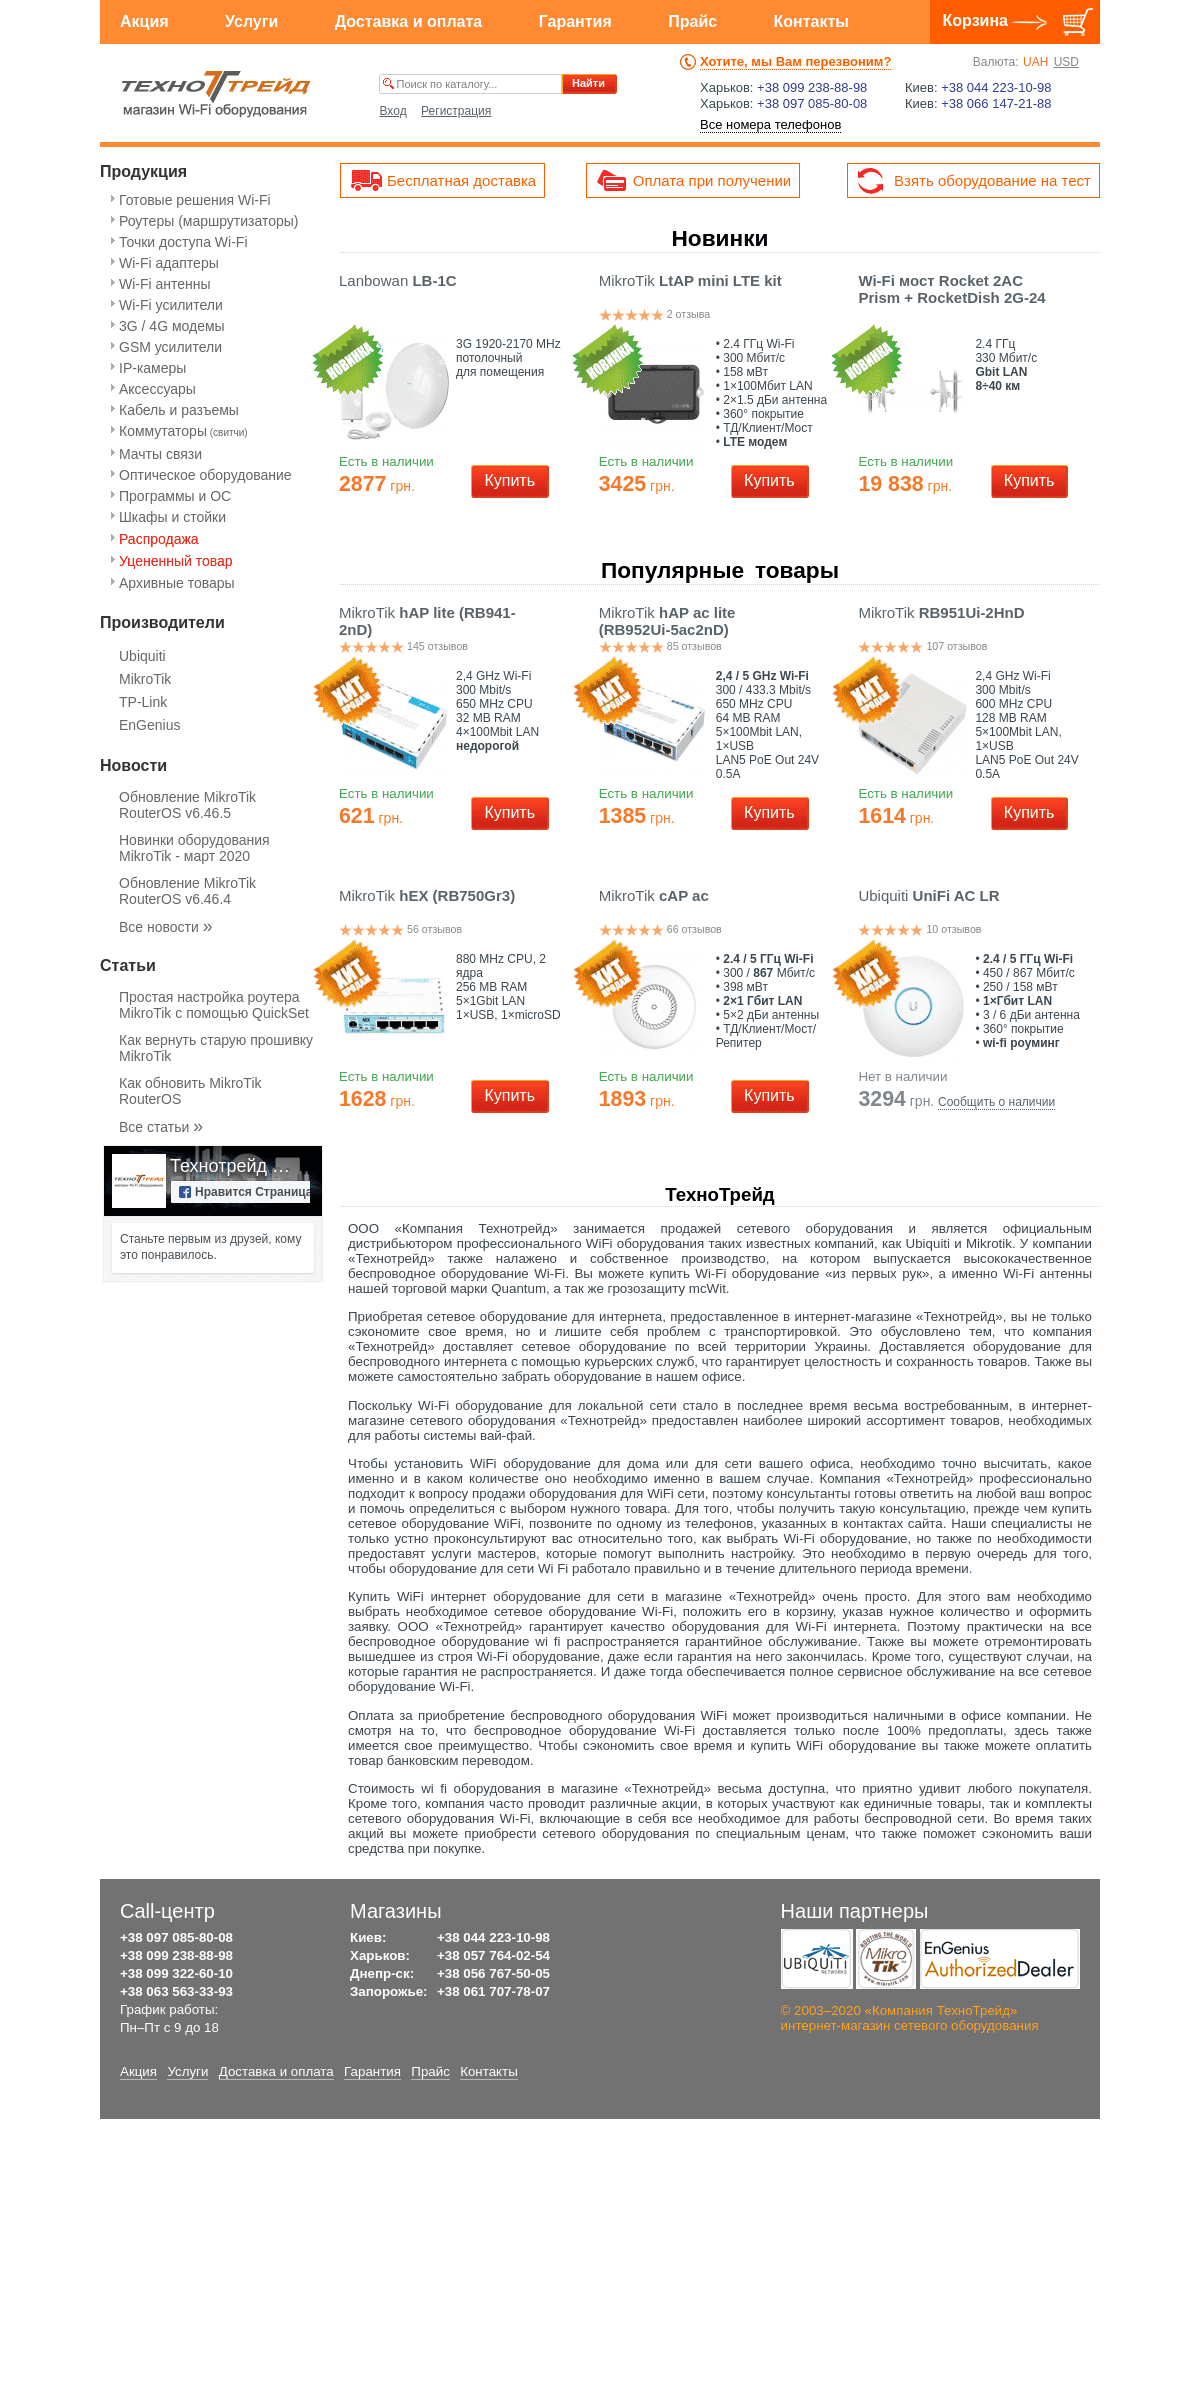 A complete backup of technotrade.com.ua